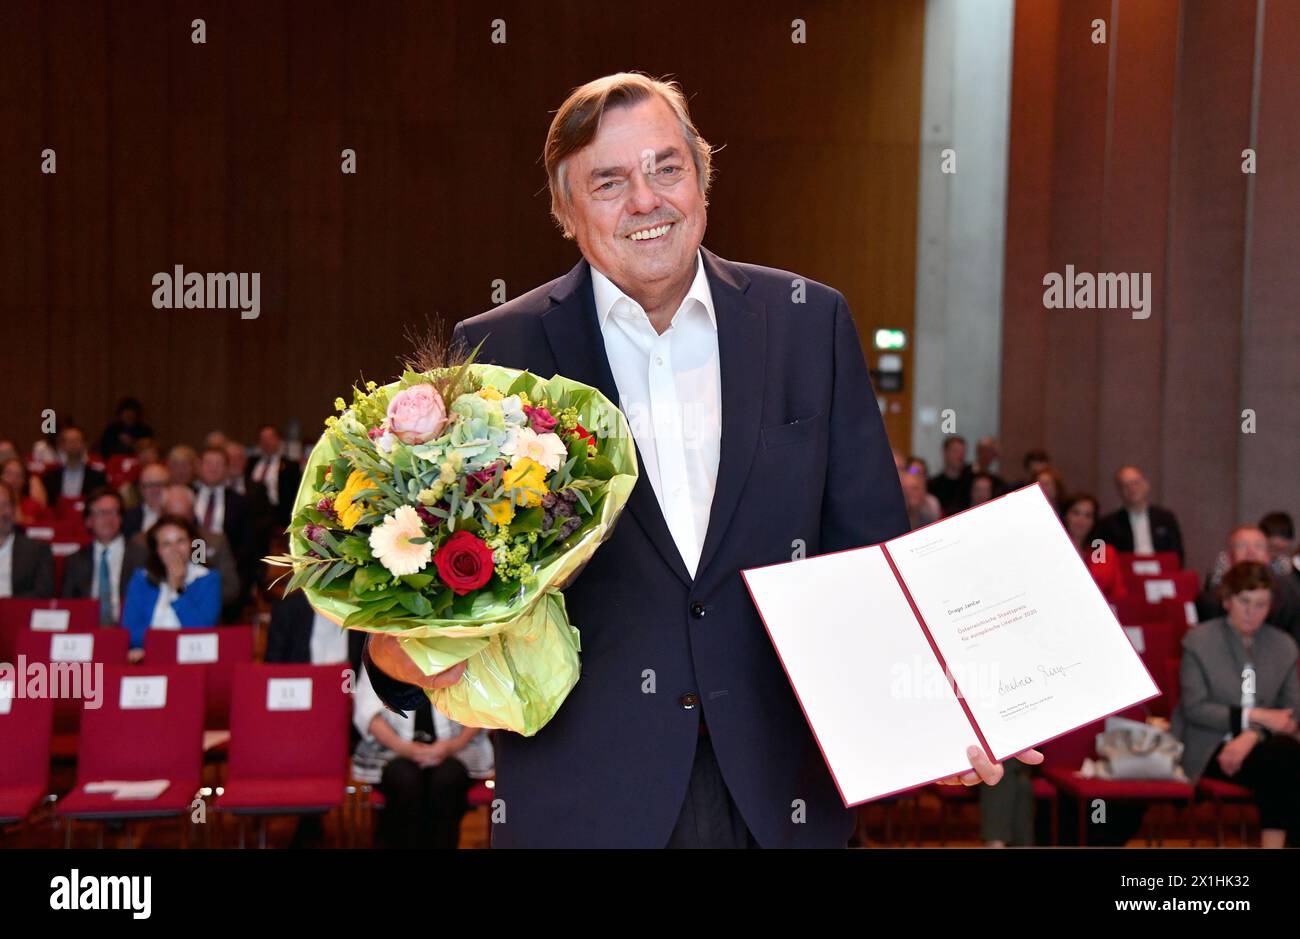 L'autore sloveno Drago Jancar (C) posa dopo aver ricevuto il "Premio di Stato austriaco per la letteratura europea" il 3 agosto 2020 a Salisburgo. - 20200803 PD1620 - Rechteinfo: Diritti gestiti (RM) Foto Stock